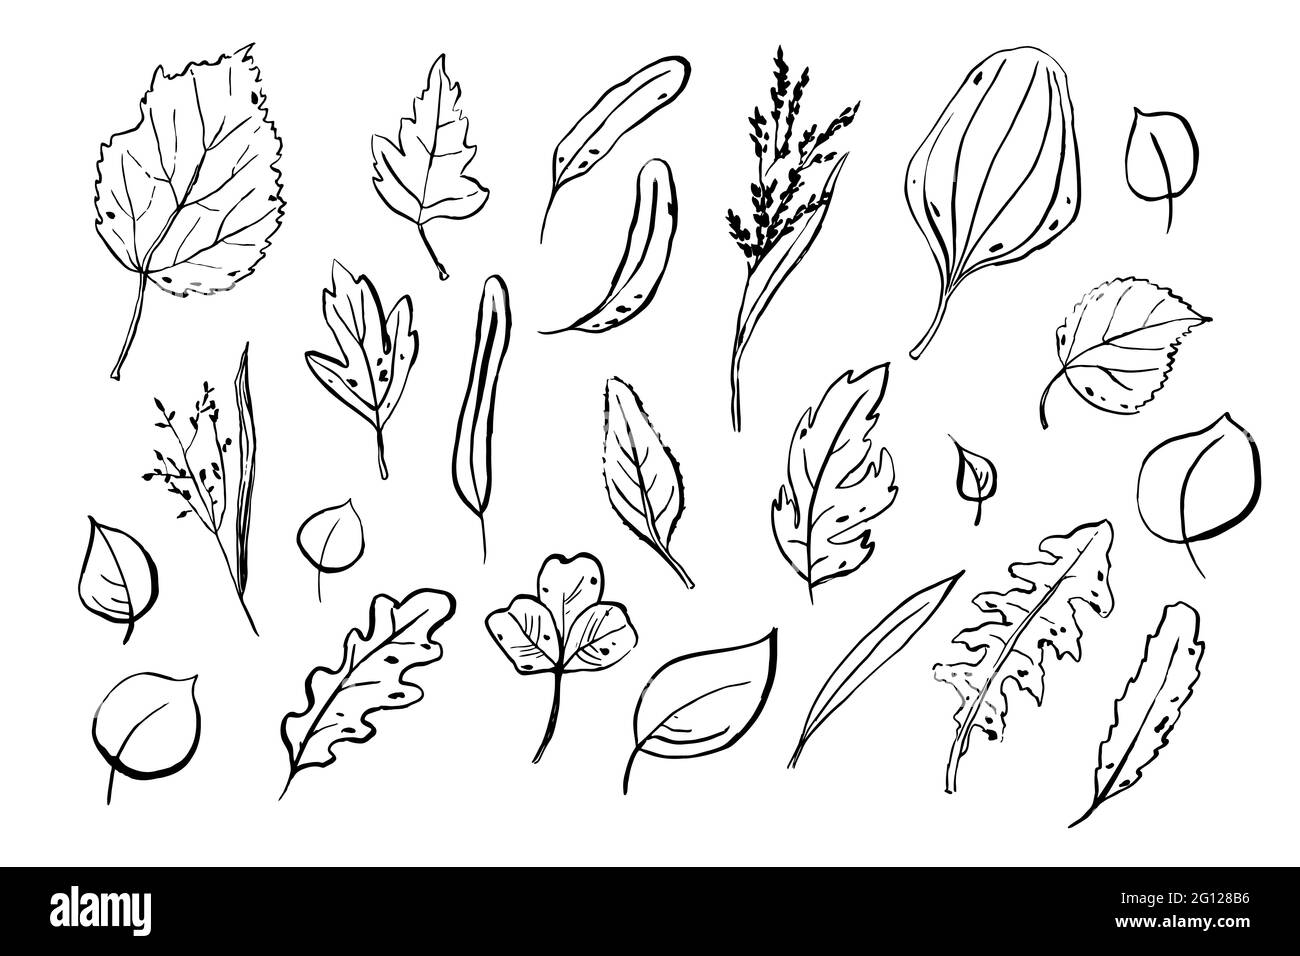 Lässt Skizzen gesetzt. Handgezeichnete Kräuter isoliert auf weißem Hintergrund. Sammlung von Kritzelpflanzen. Natur, Gartenarbeit, Wald, Sommer, Herbstschilder. Stock Vektor